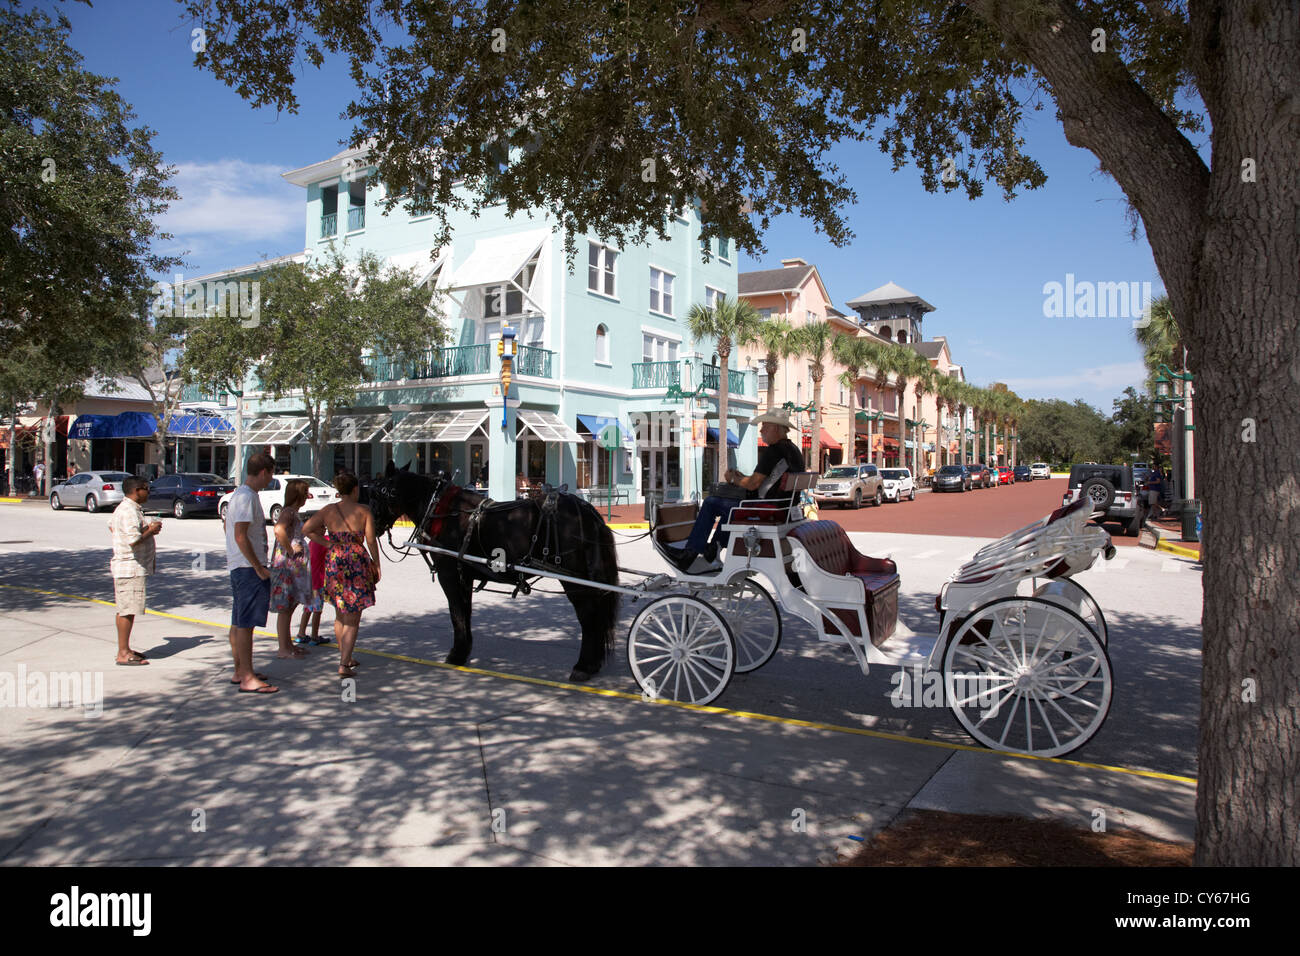 Pferdekutsche vor Markt Straße Geschäfte Cafés und Restaurants Innenstadt Feier Florida Usa Stockfoto